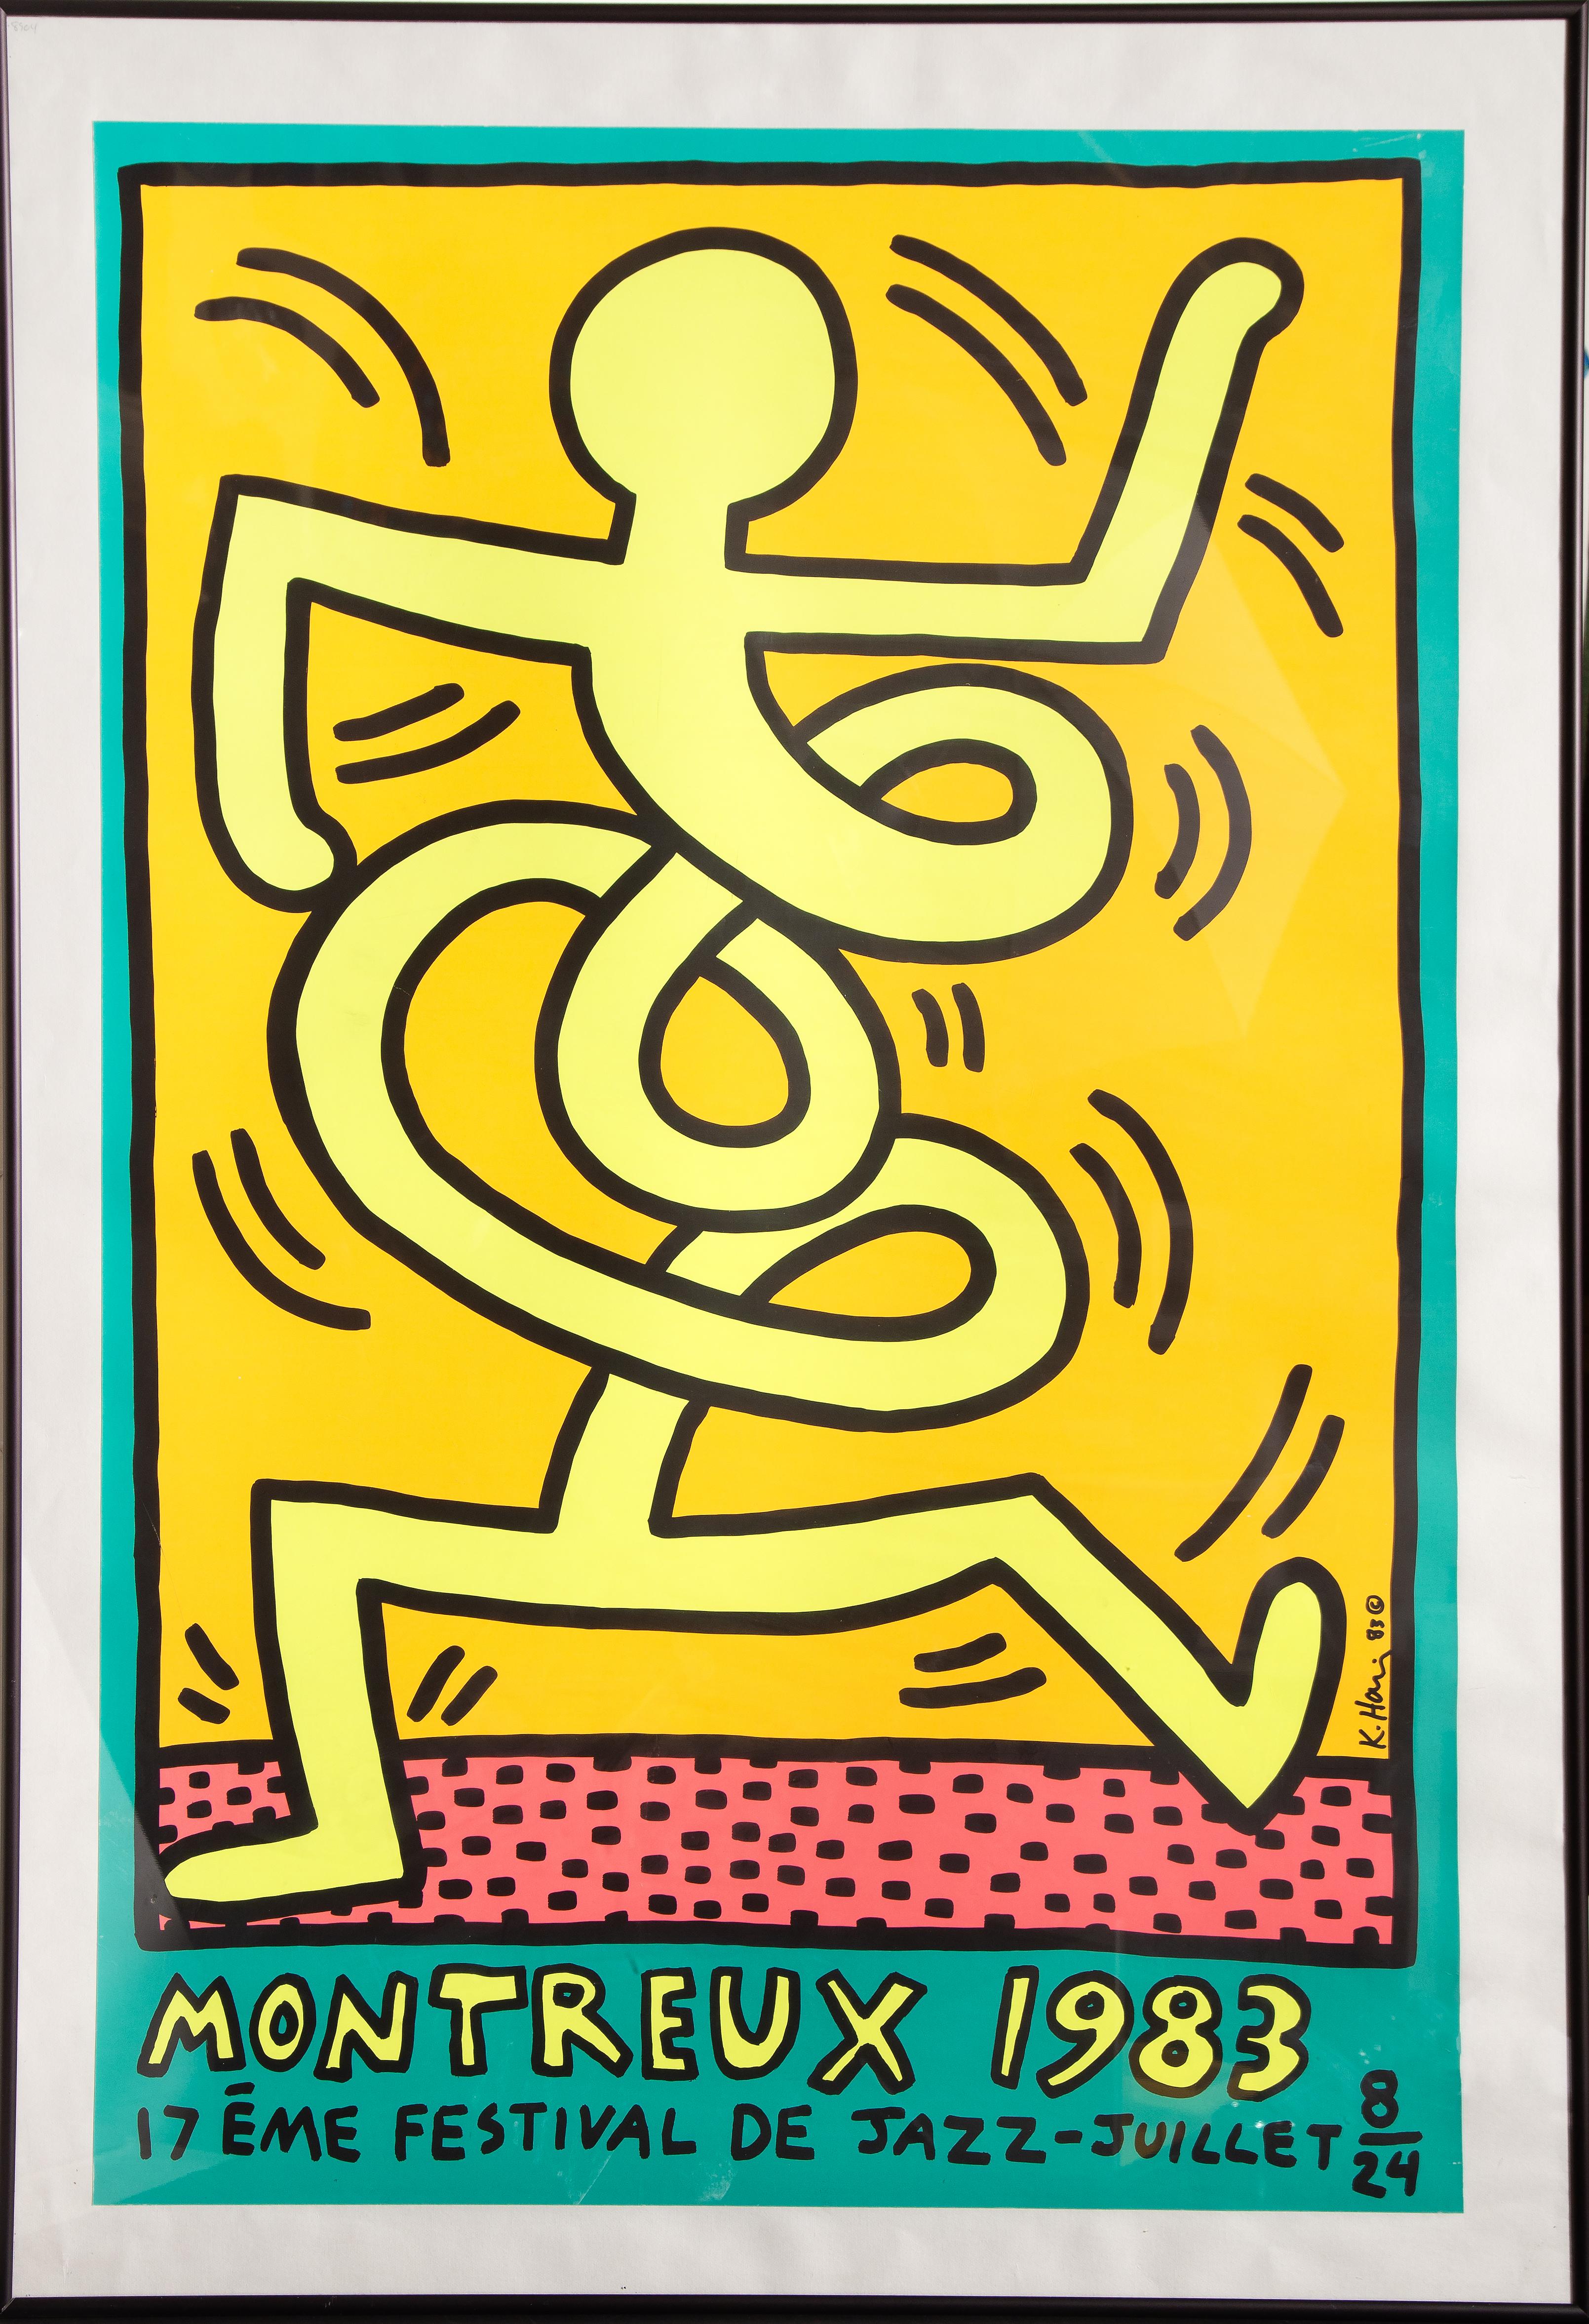 Cartel del 17º Festival de Jazz de Montreux en 1983. El cartel fue diseñado por el artista pop estadounidense Keith Haring para el festival. La pieza está firmada y fechada en la placa y muy bien enmarcada.

Montreux 1983
Keith Haring,